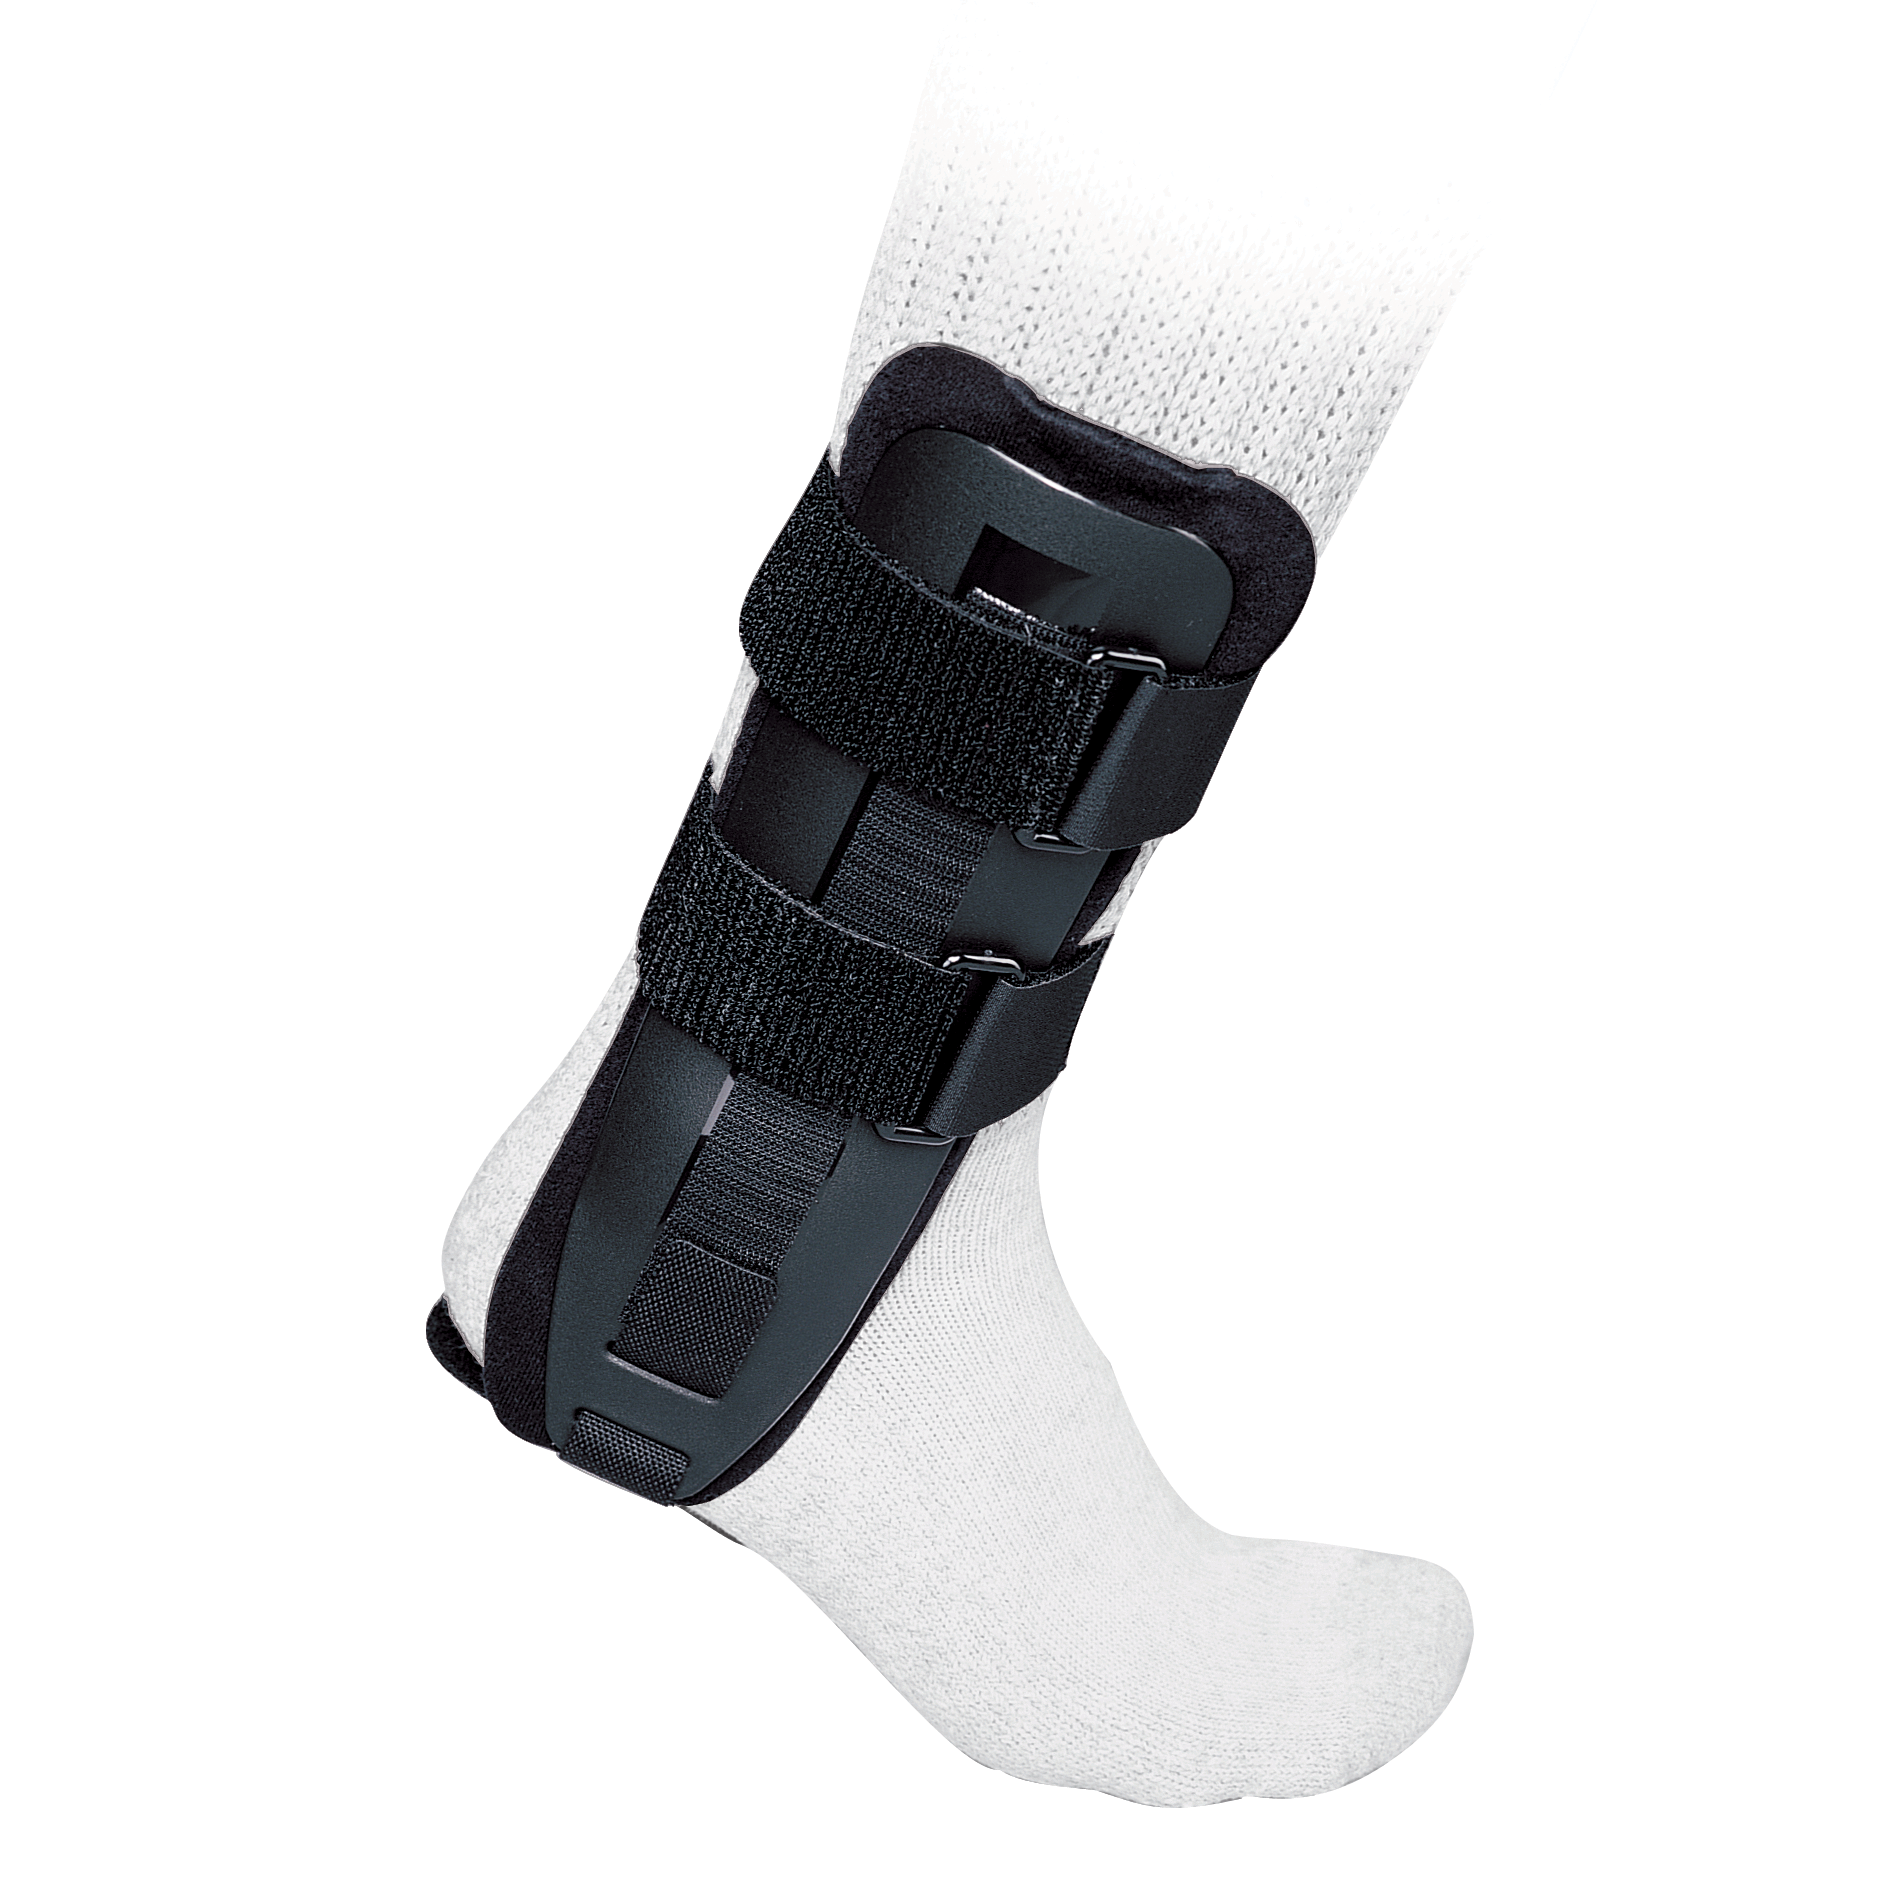 Produktbild PROCARE® Surround™ Ankle, Orthese zur Stabilisierung des Sprunggelenks mit Begrenzung von Pro- und Supination